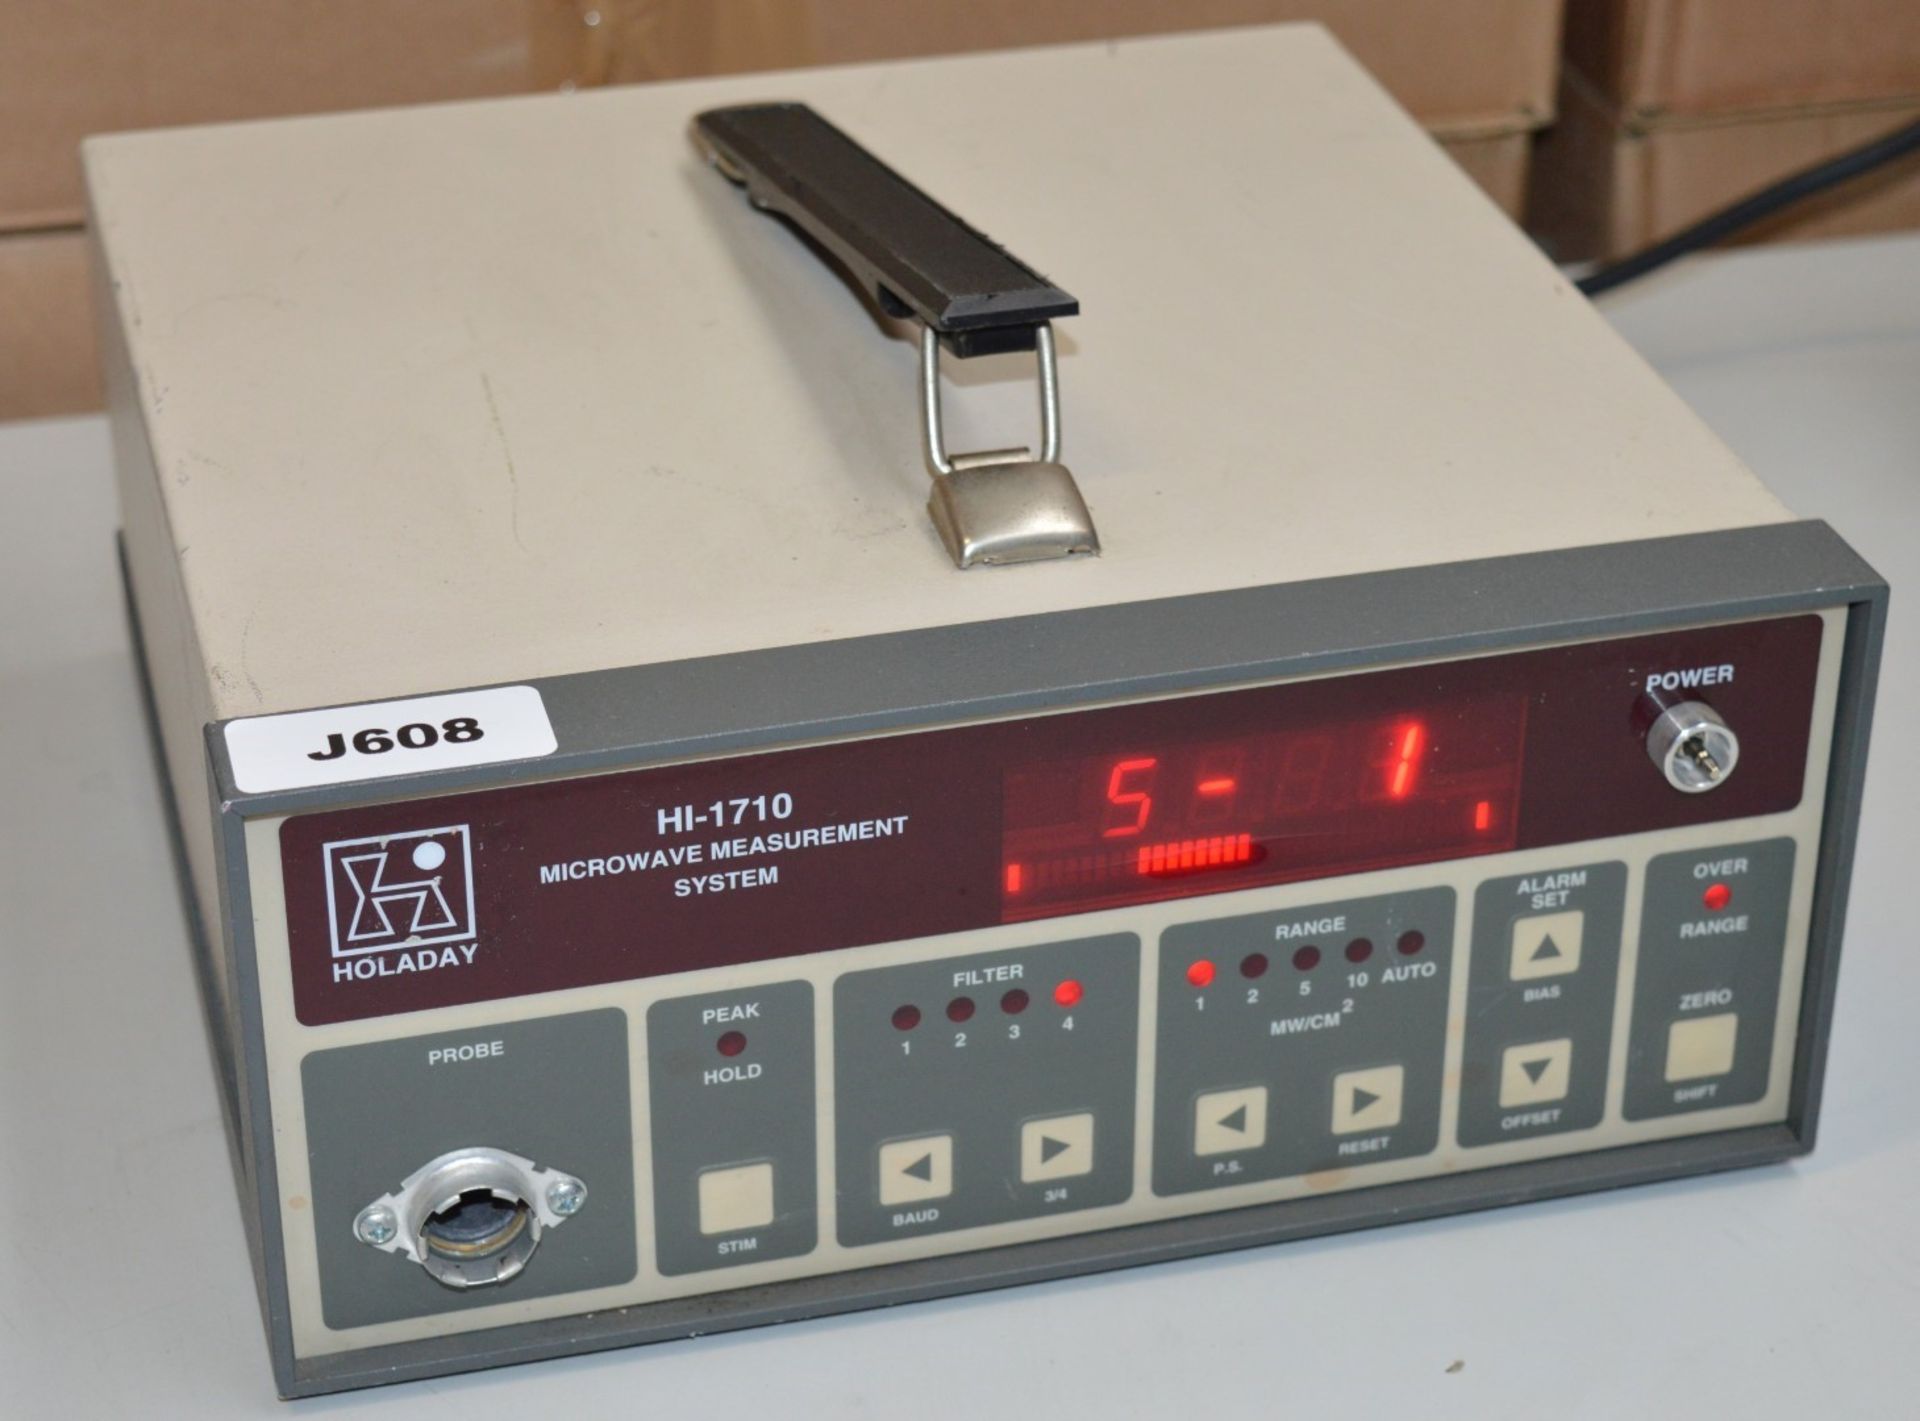 1 HOLDAY Microwave Measurement System - Model HI-1710 - Vintage Test Equipment - CL011 - Ref